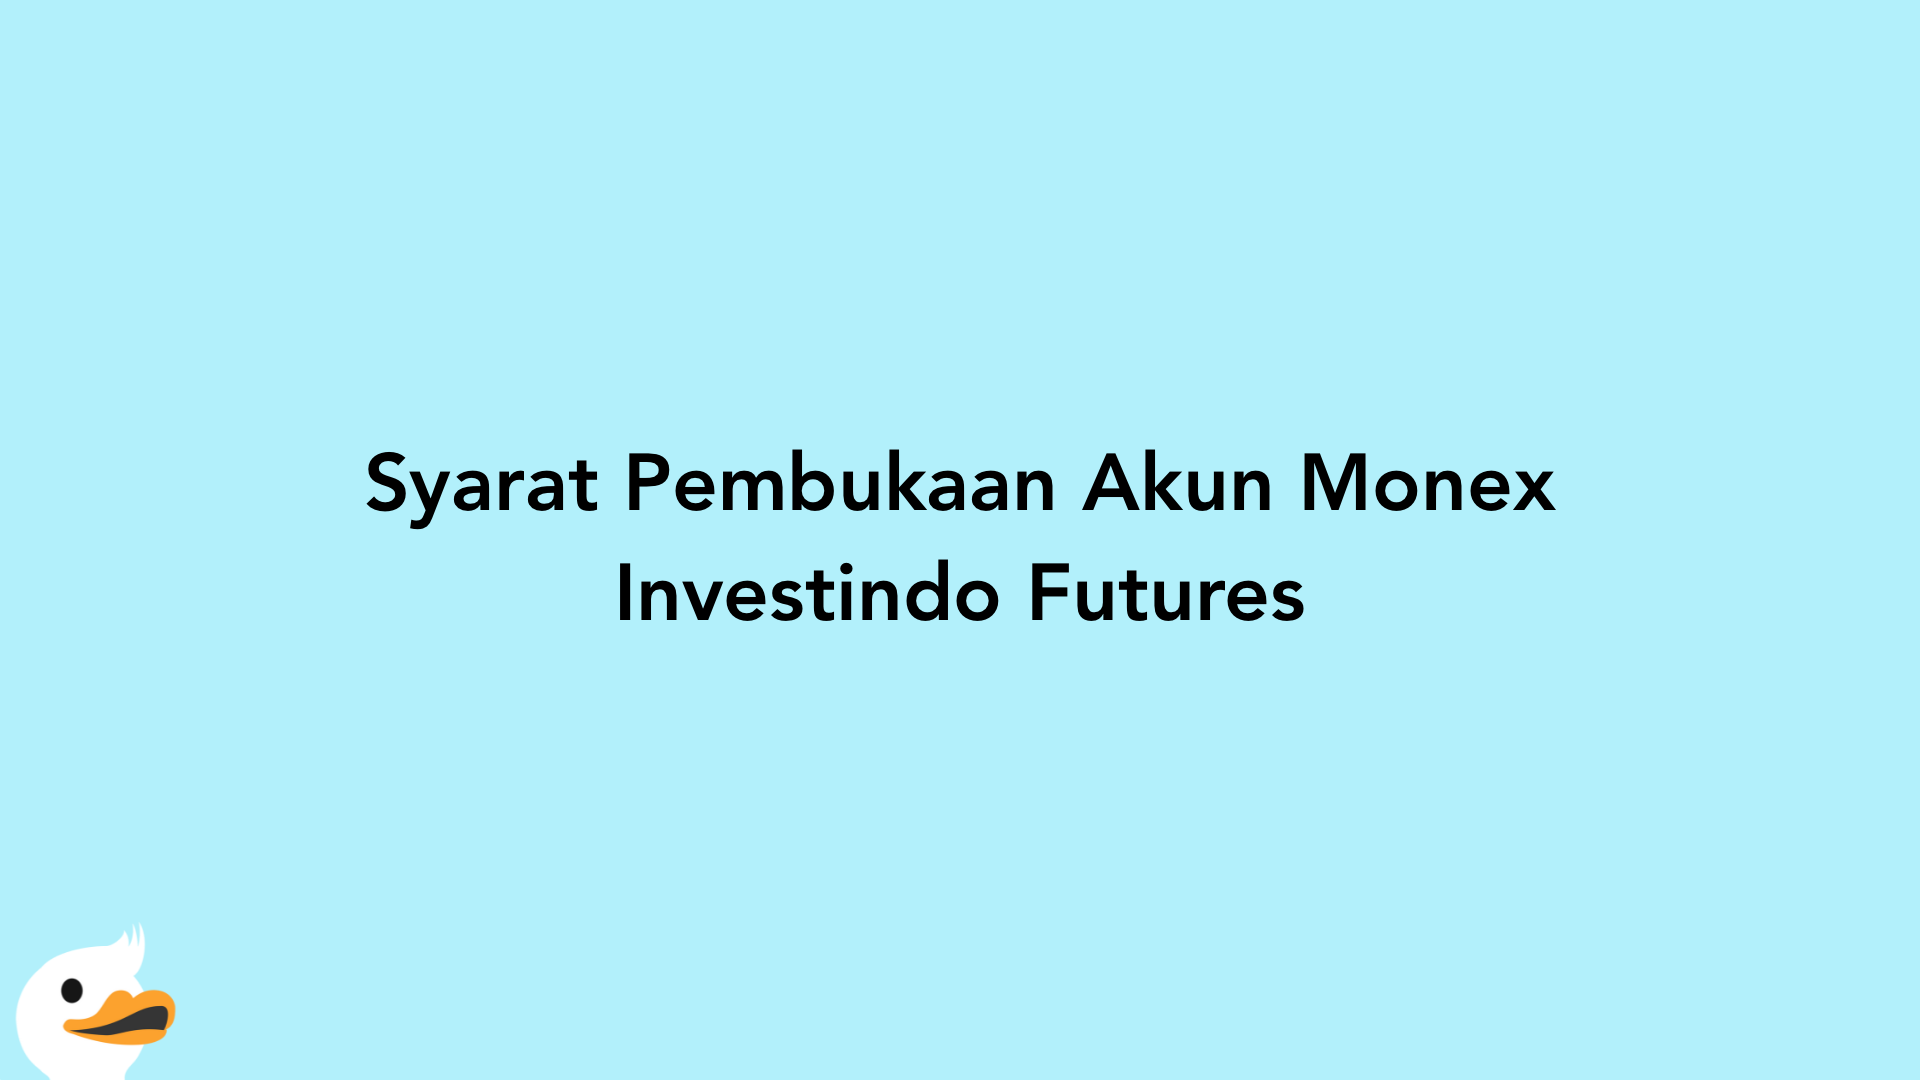 Syarat Pembukaan Akun Monex Investindo Futures